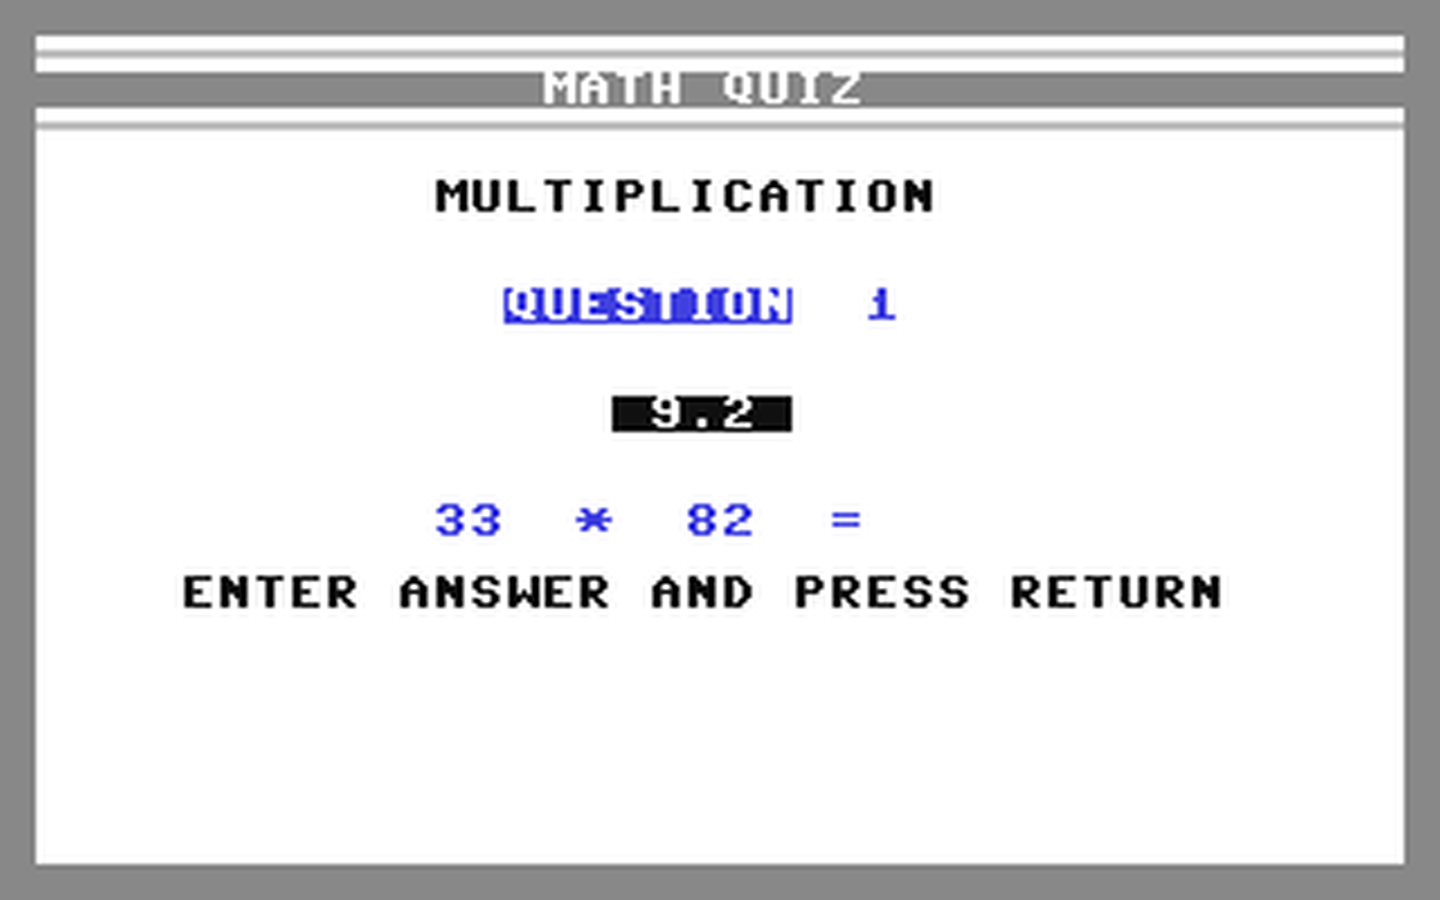 C64 GameBase Math_Book_I BCI_Software 1983